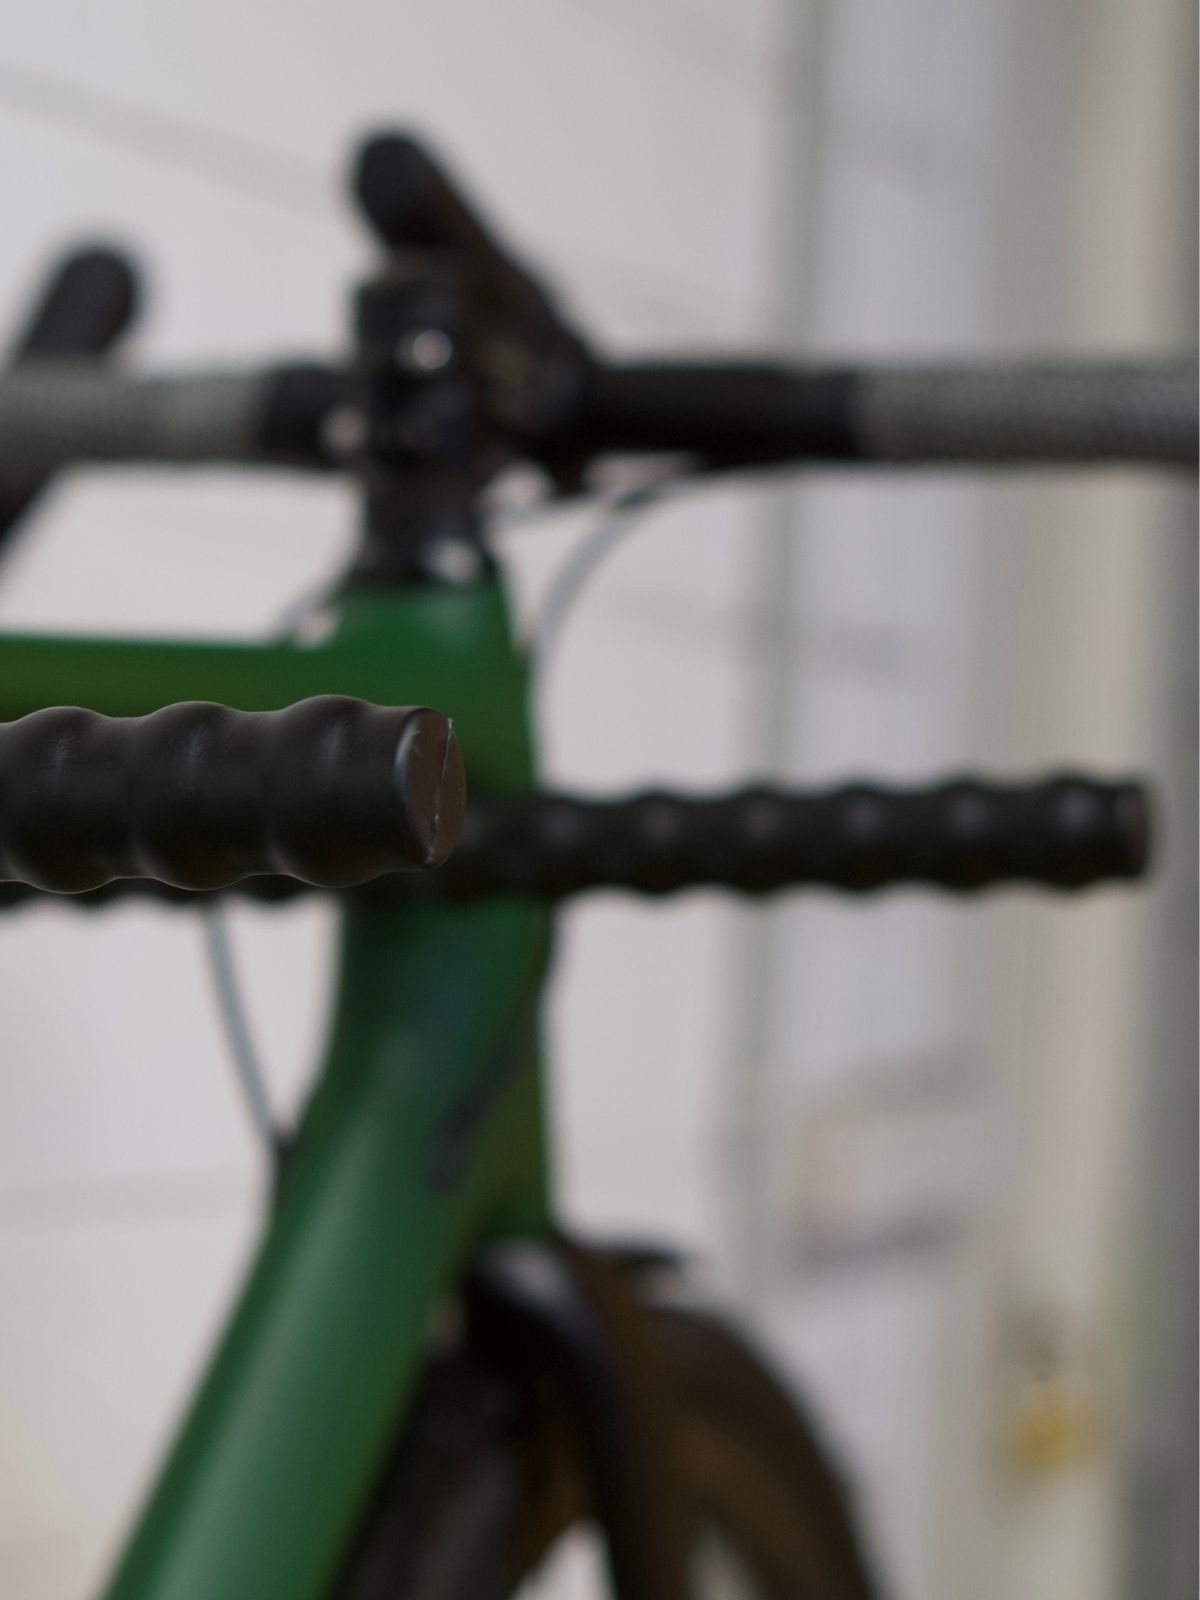 Nahaufnahme von einem Fahrrad, welches auf einer Fahrrad Wandhalterung hängt  